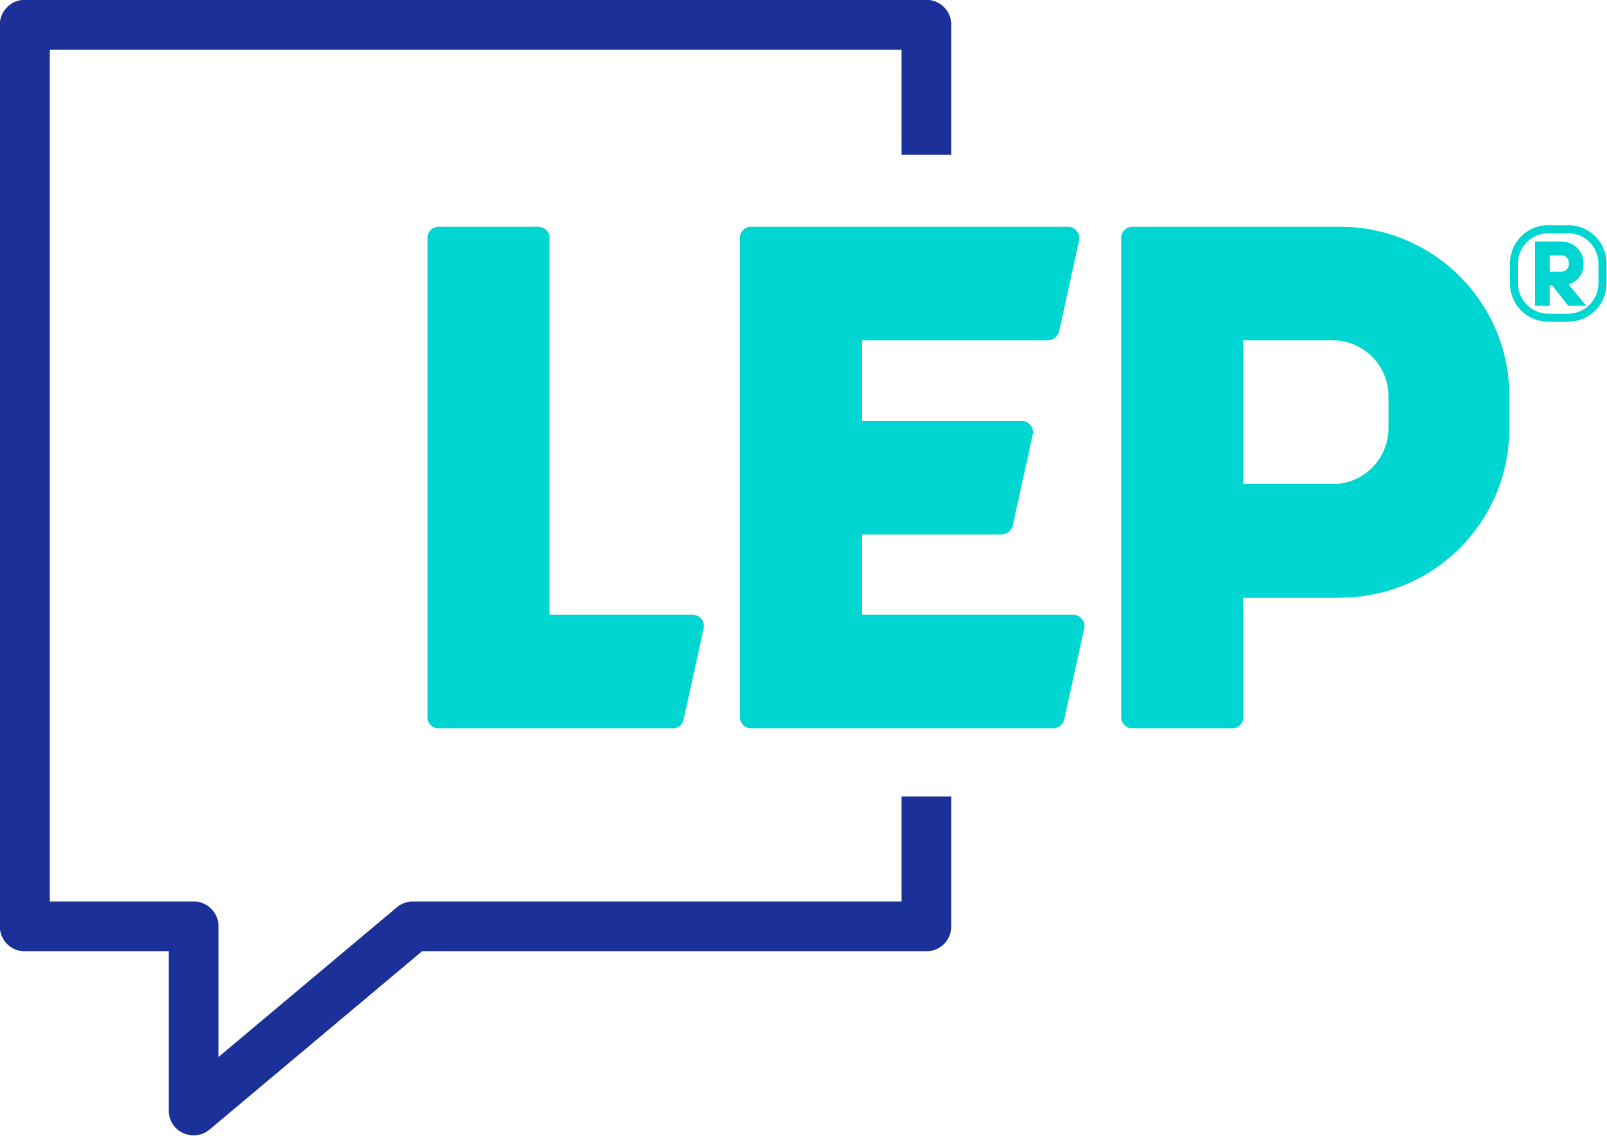 LEP AG Logo